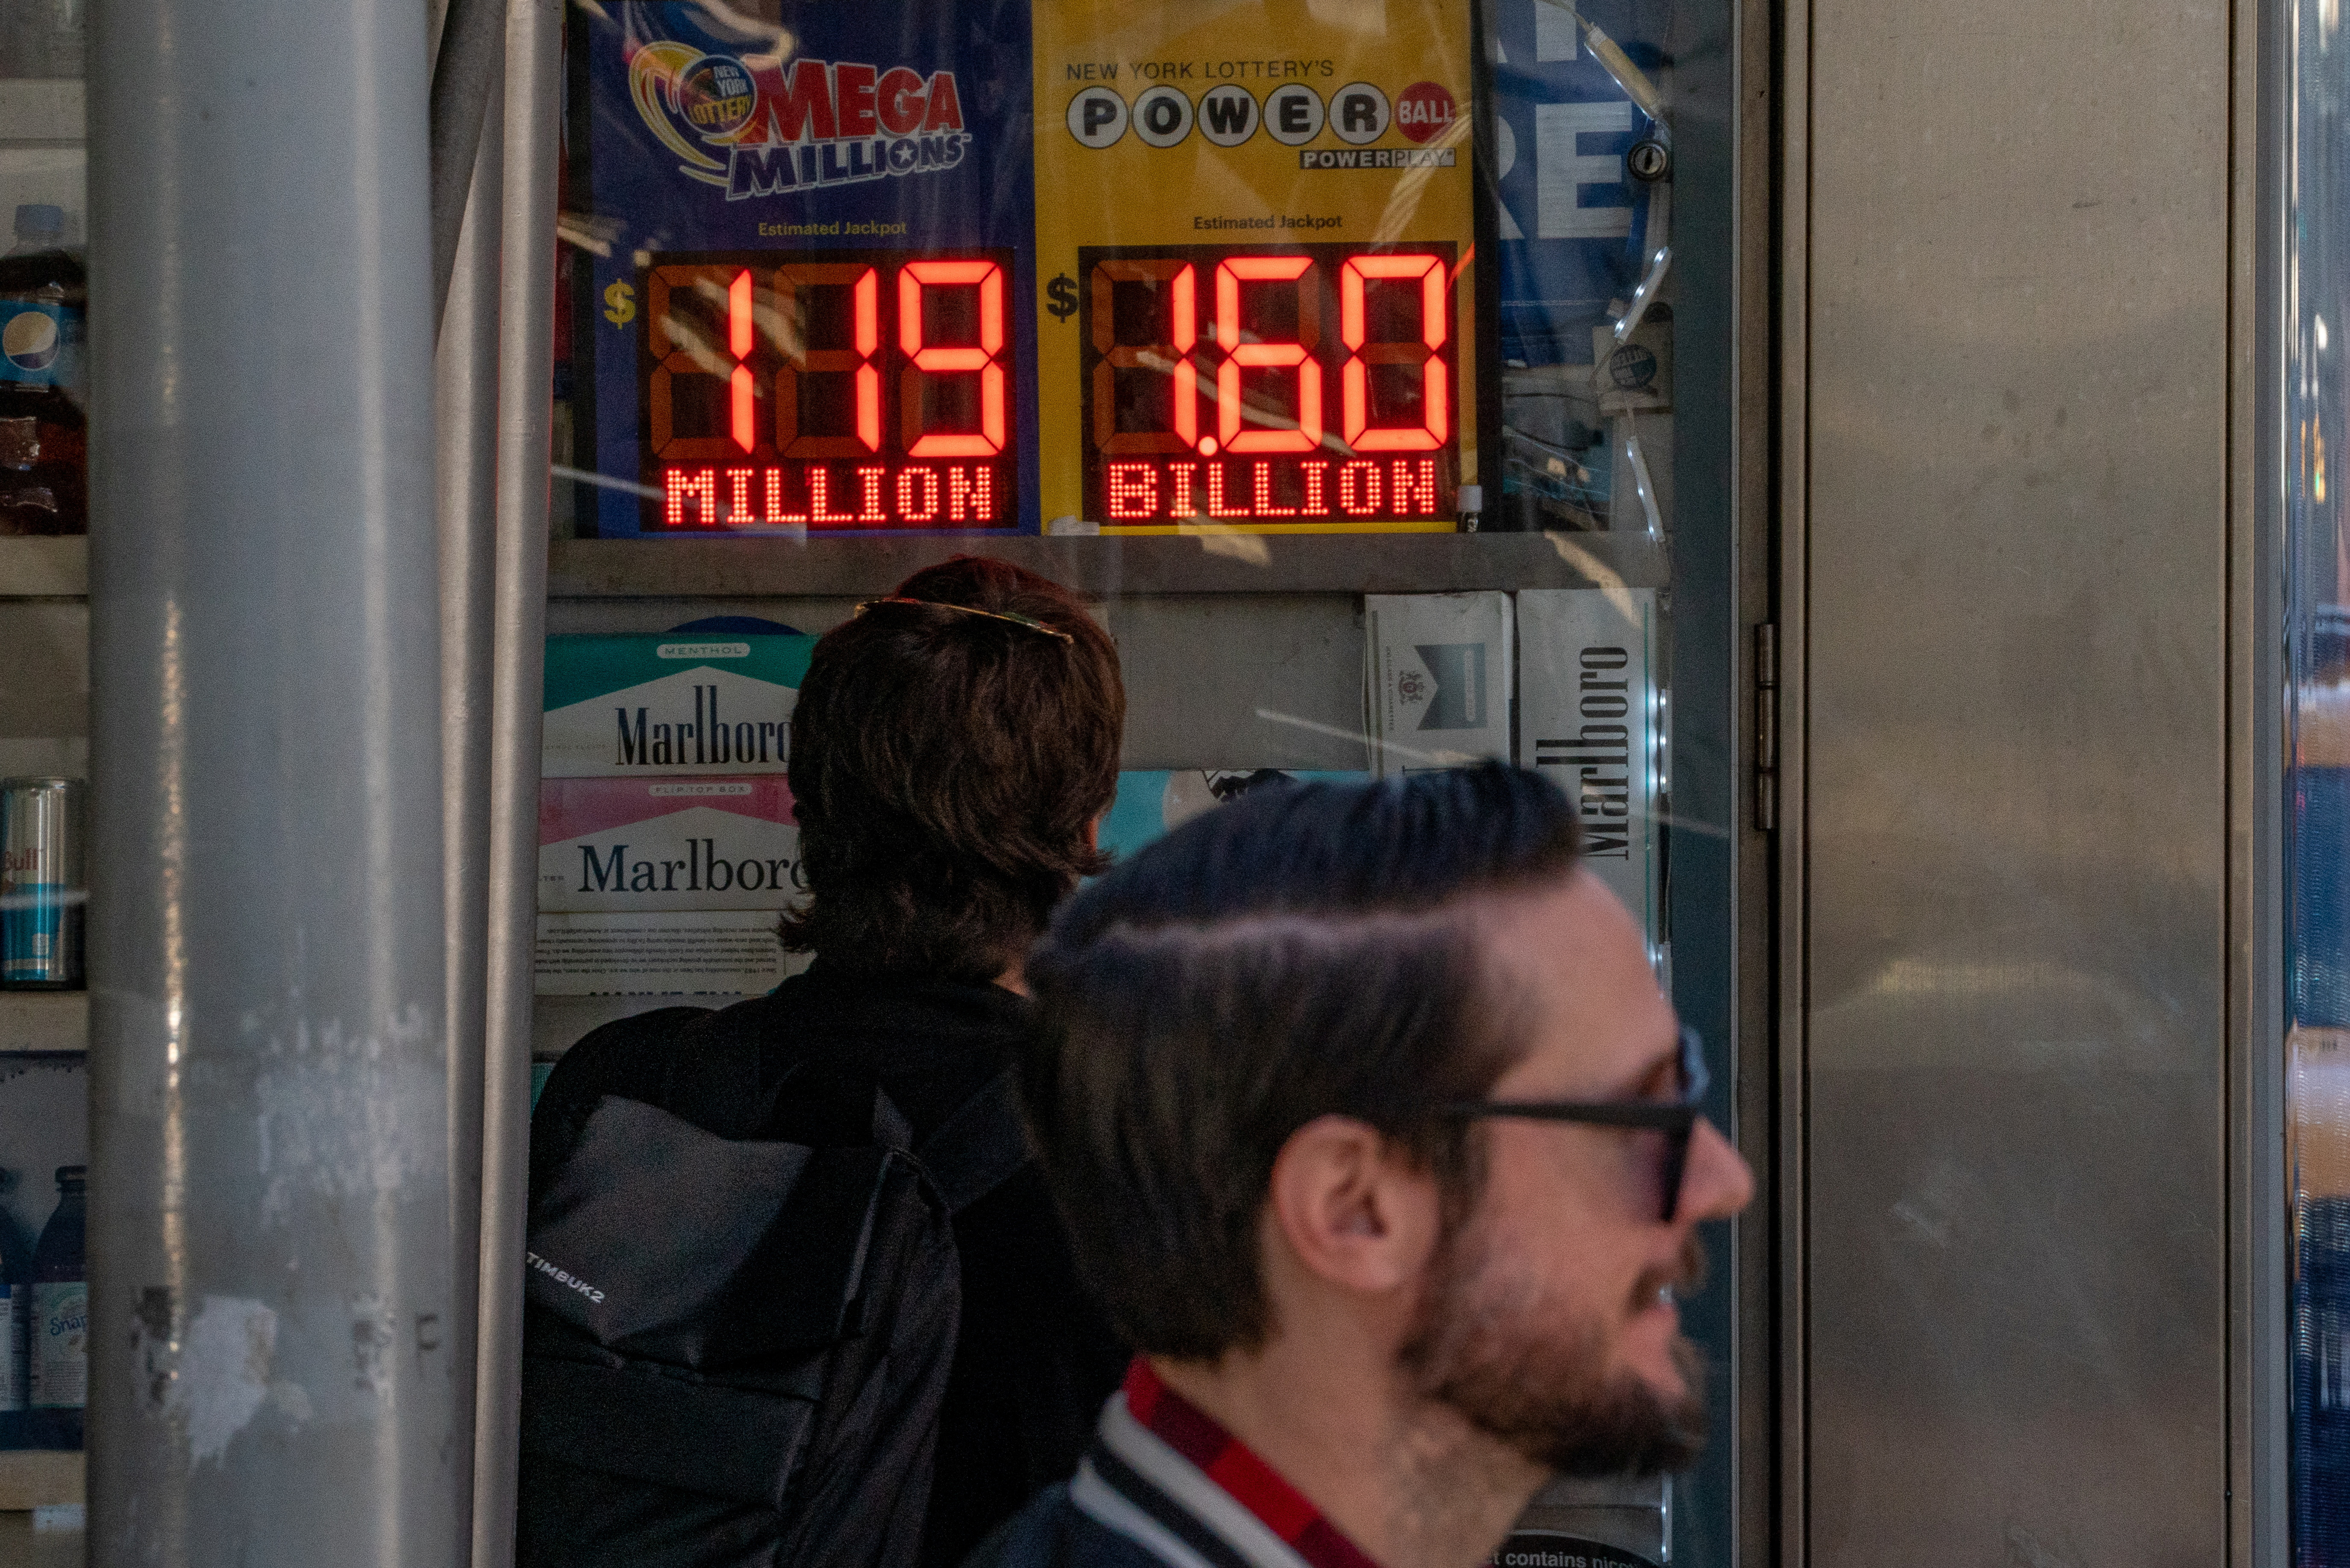 Una persona mira una cartelera digital que anuncia el premio mayor de Powerball de 1.600 millones de dólares en la ciudad de Nueva York